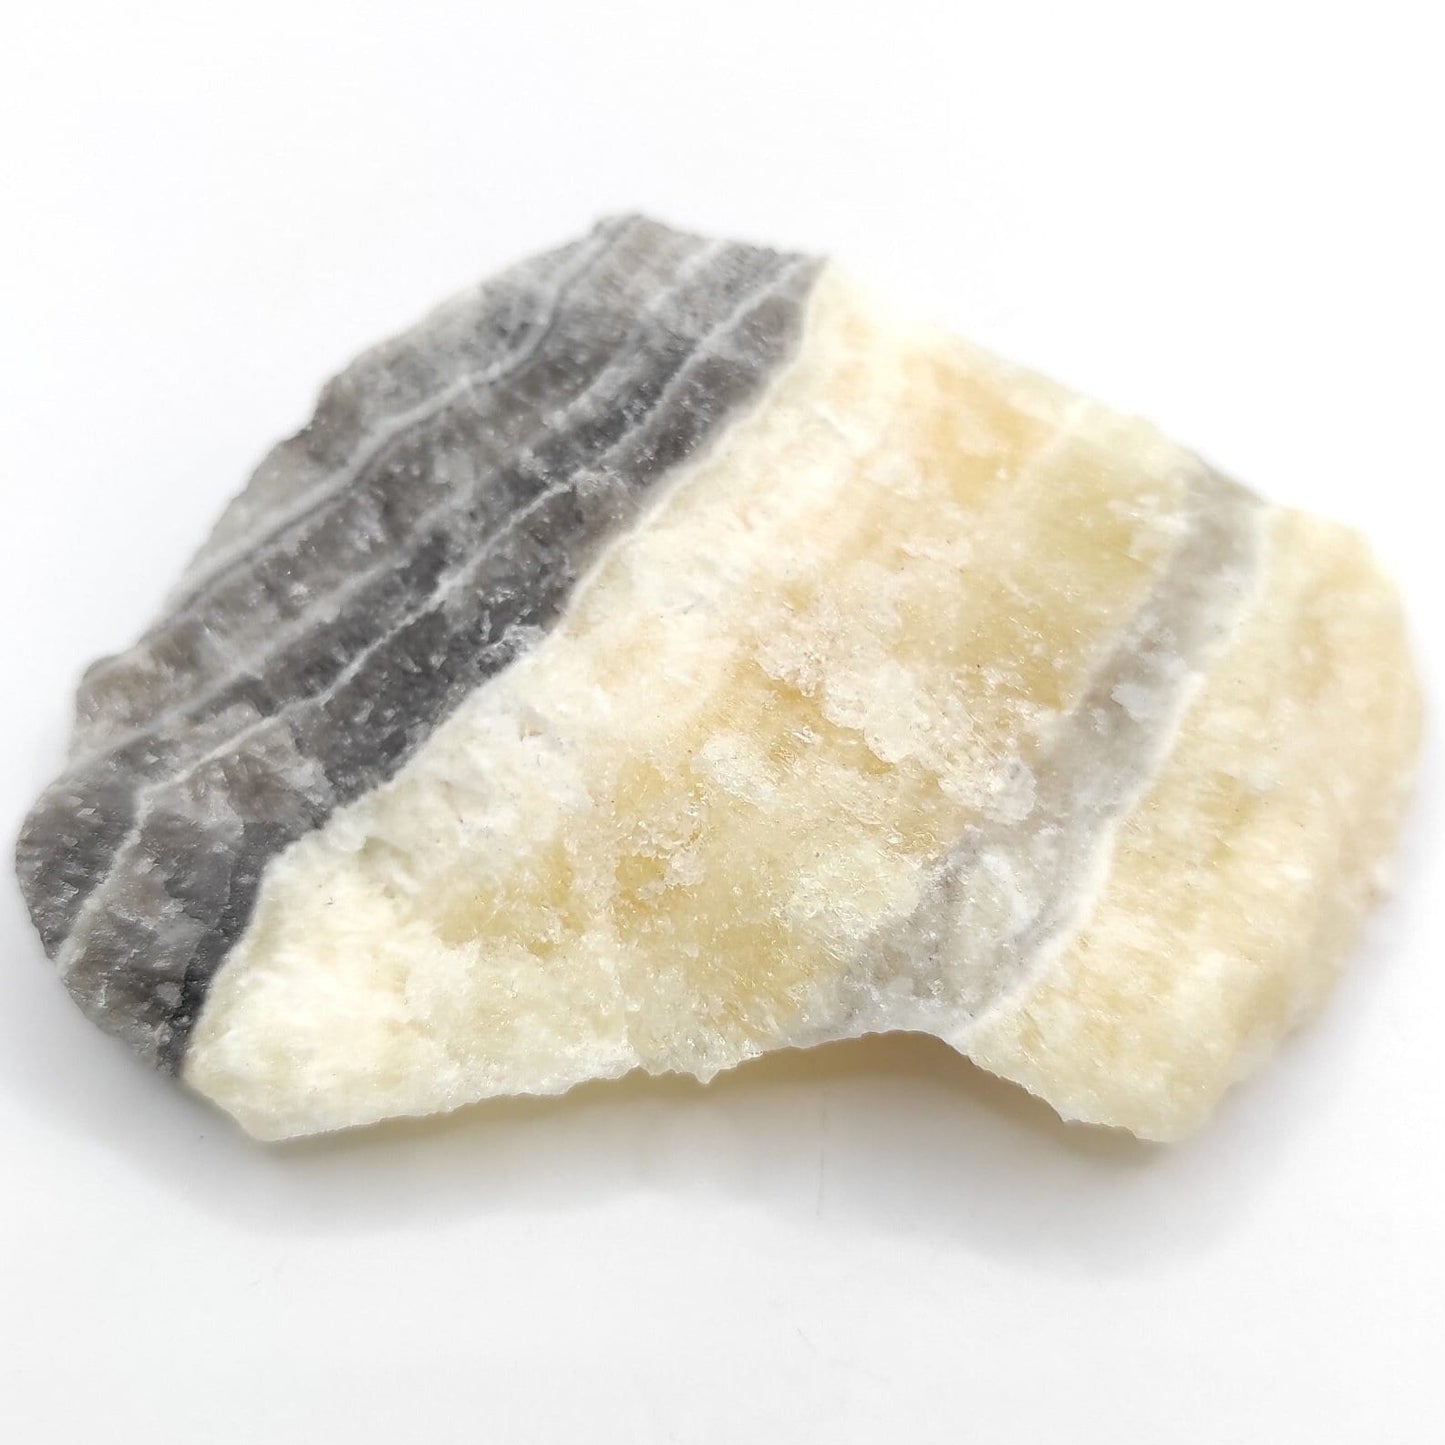 59g Zebra Calcite - Patterned Calcite Crystal - Chihuahua, Mexico - Natural Calcite - Calcite Stone - Raw Calcite Piece - Rough Calcite